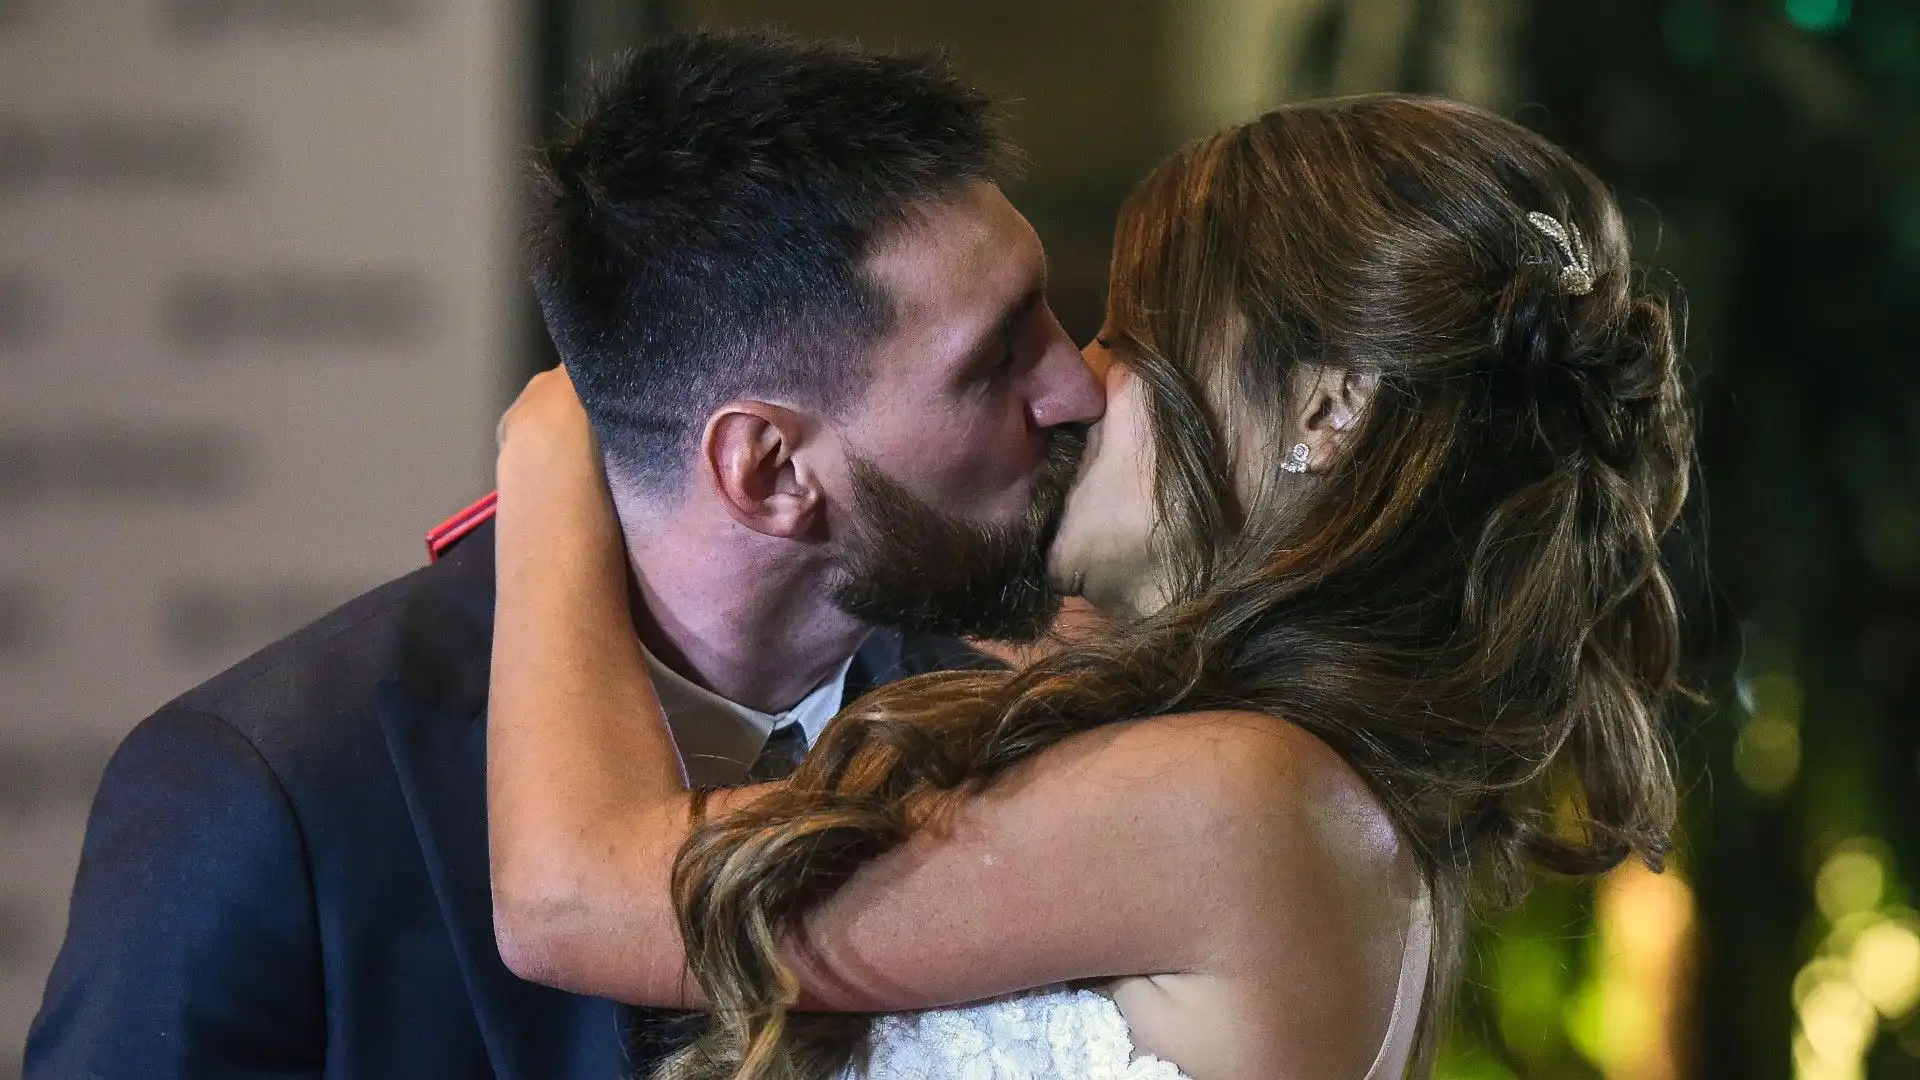 Ecco un'immagine del matrimonio tra Lionel Messi e Antonella Roccuzzo